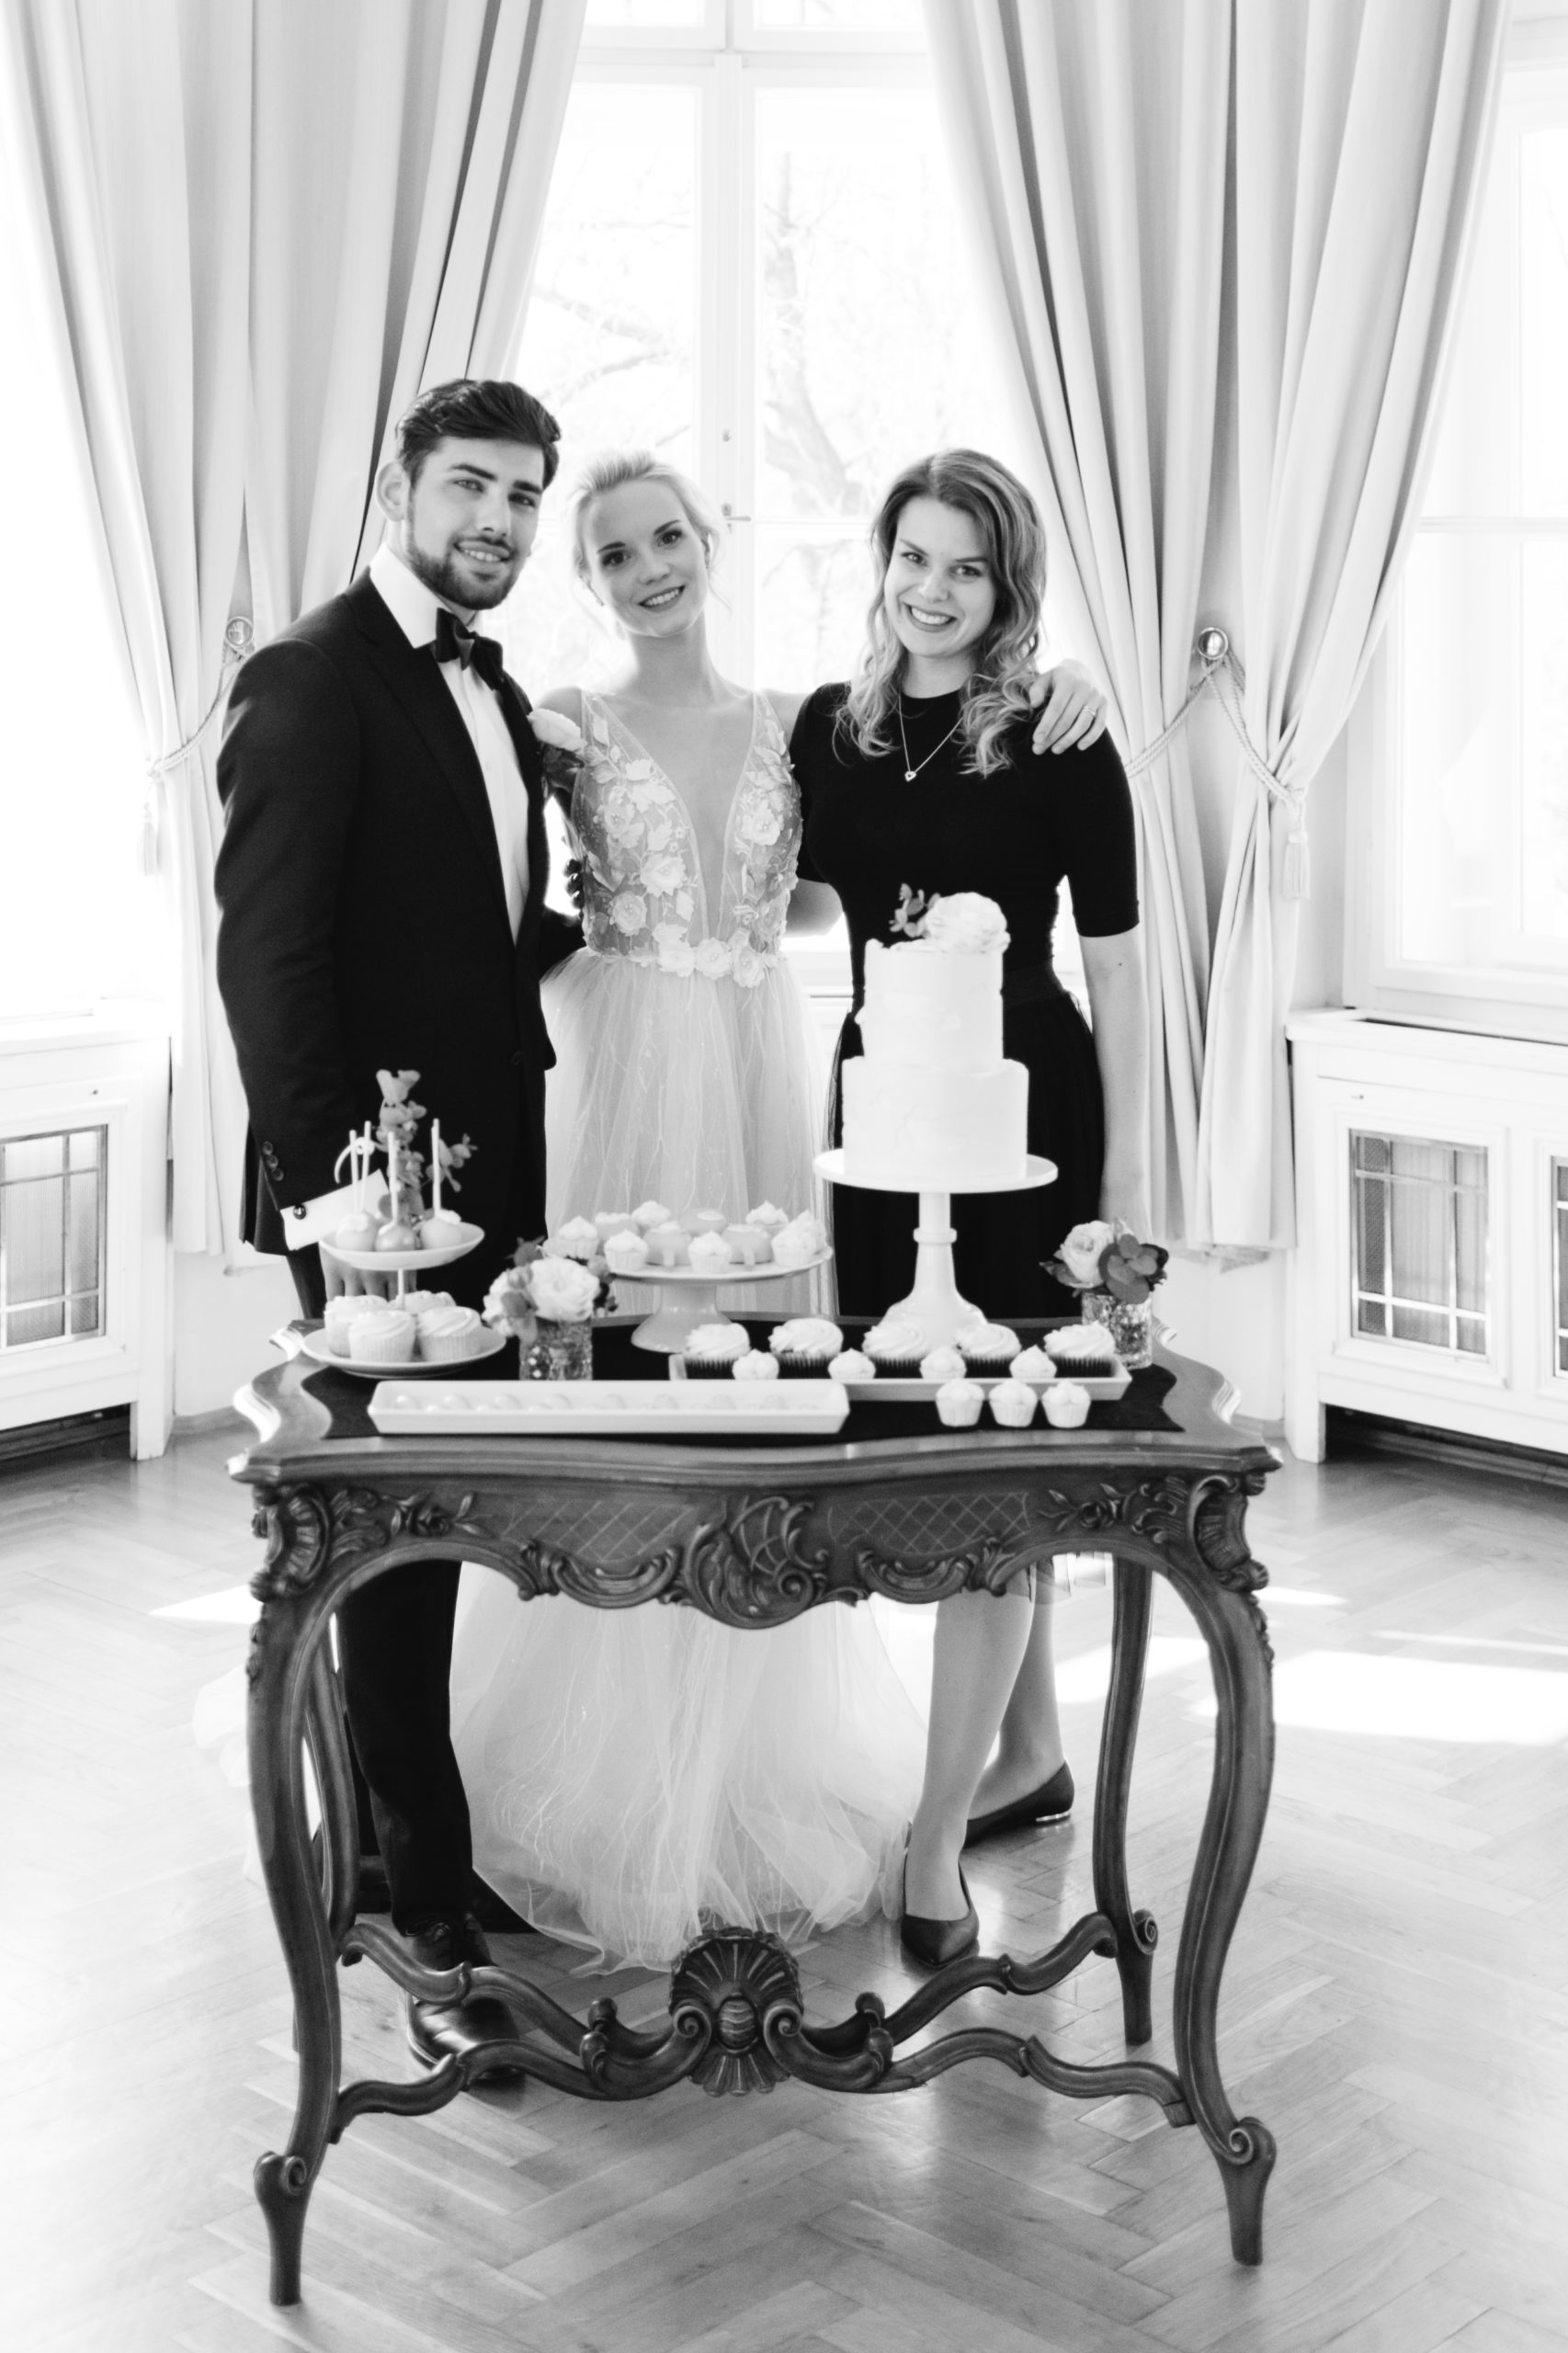 Letensky Chateau - Weddings in Prague - Julie May